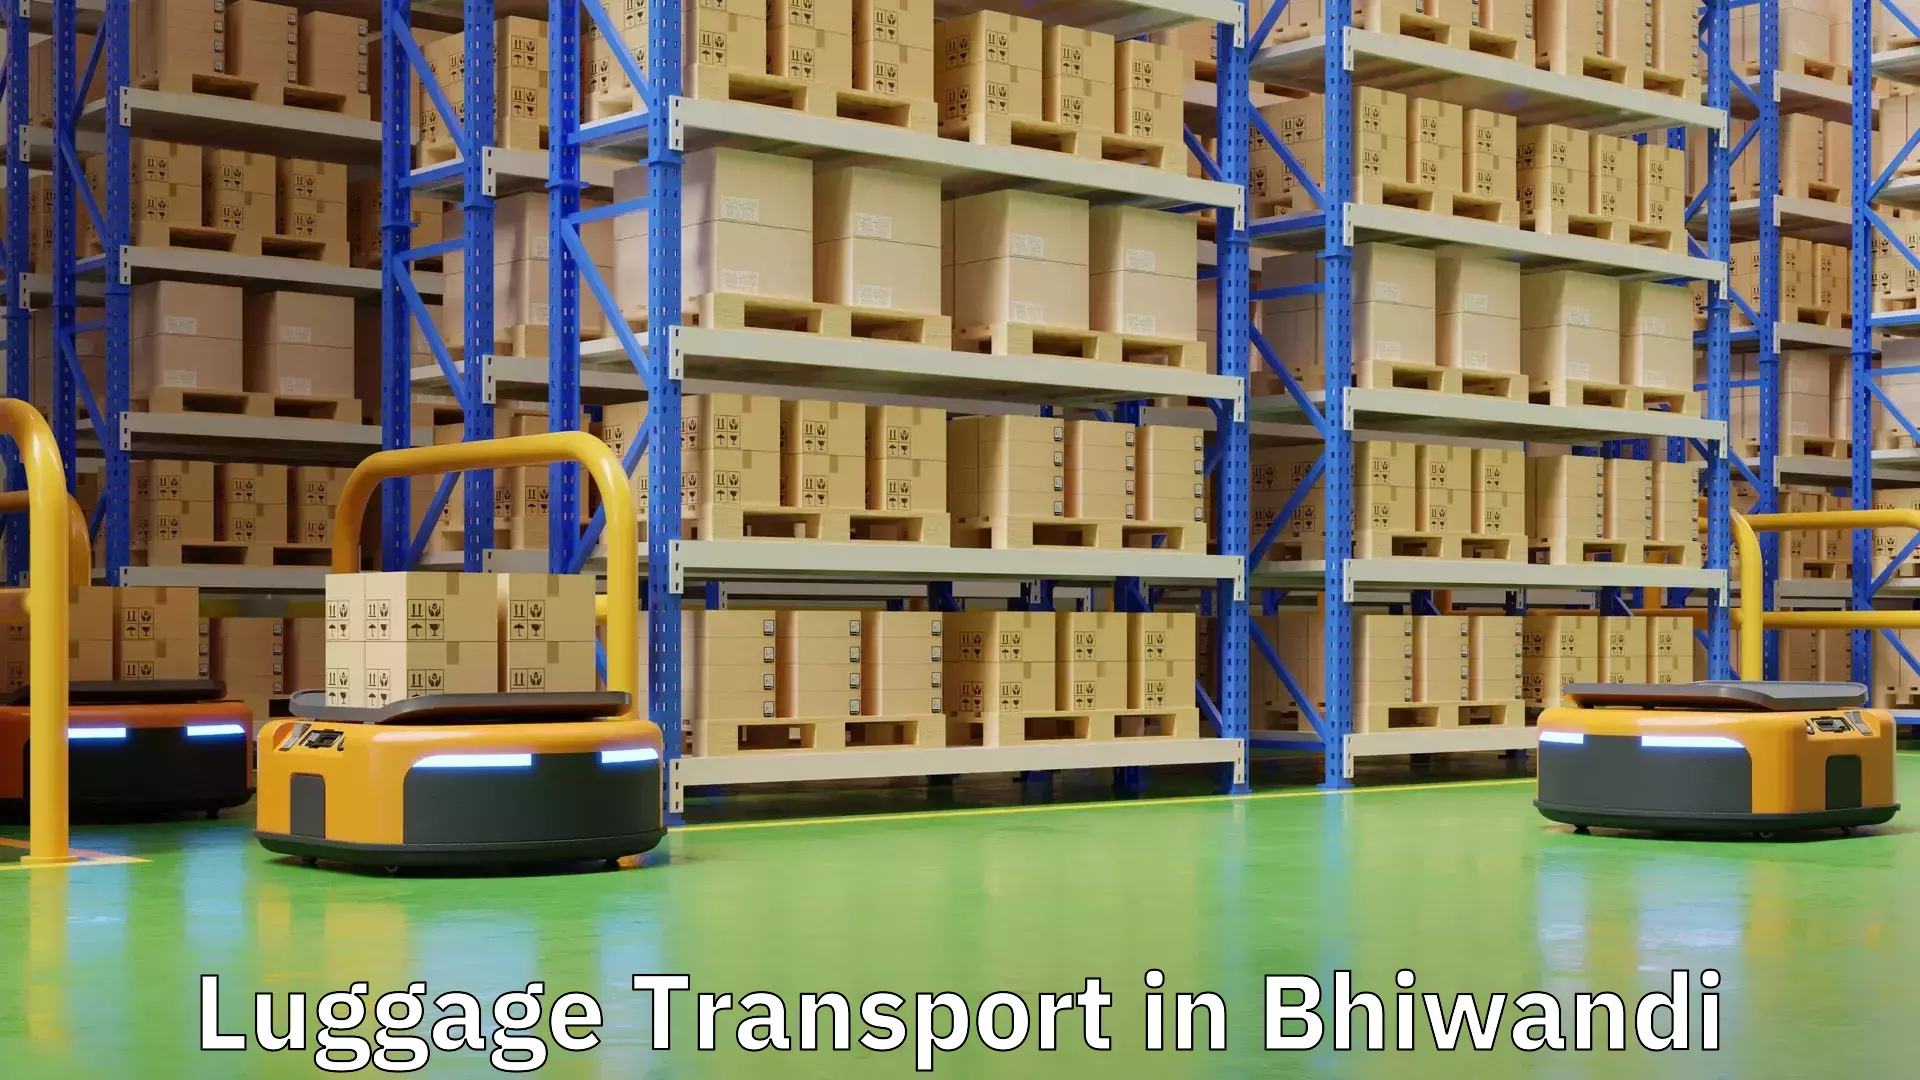 Regional luggage transport in Bhiwandi